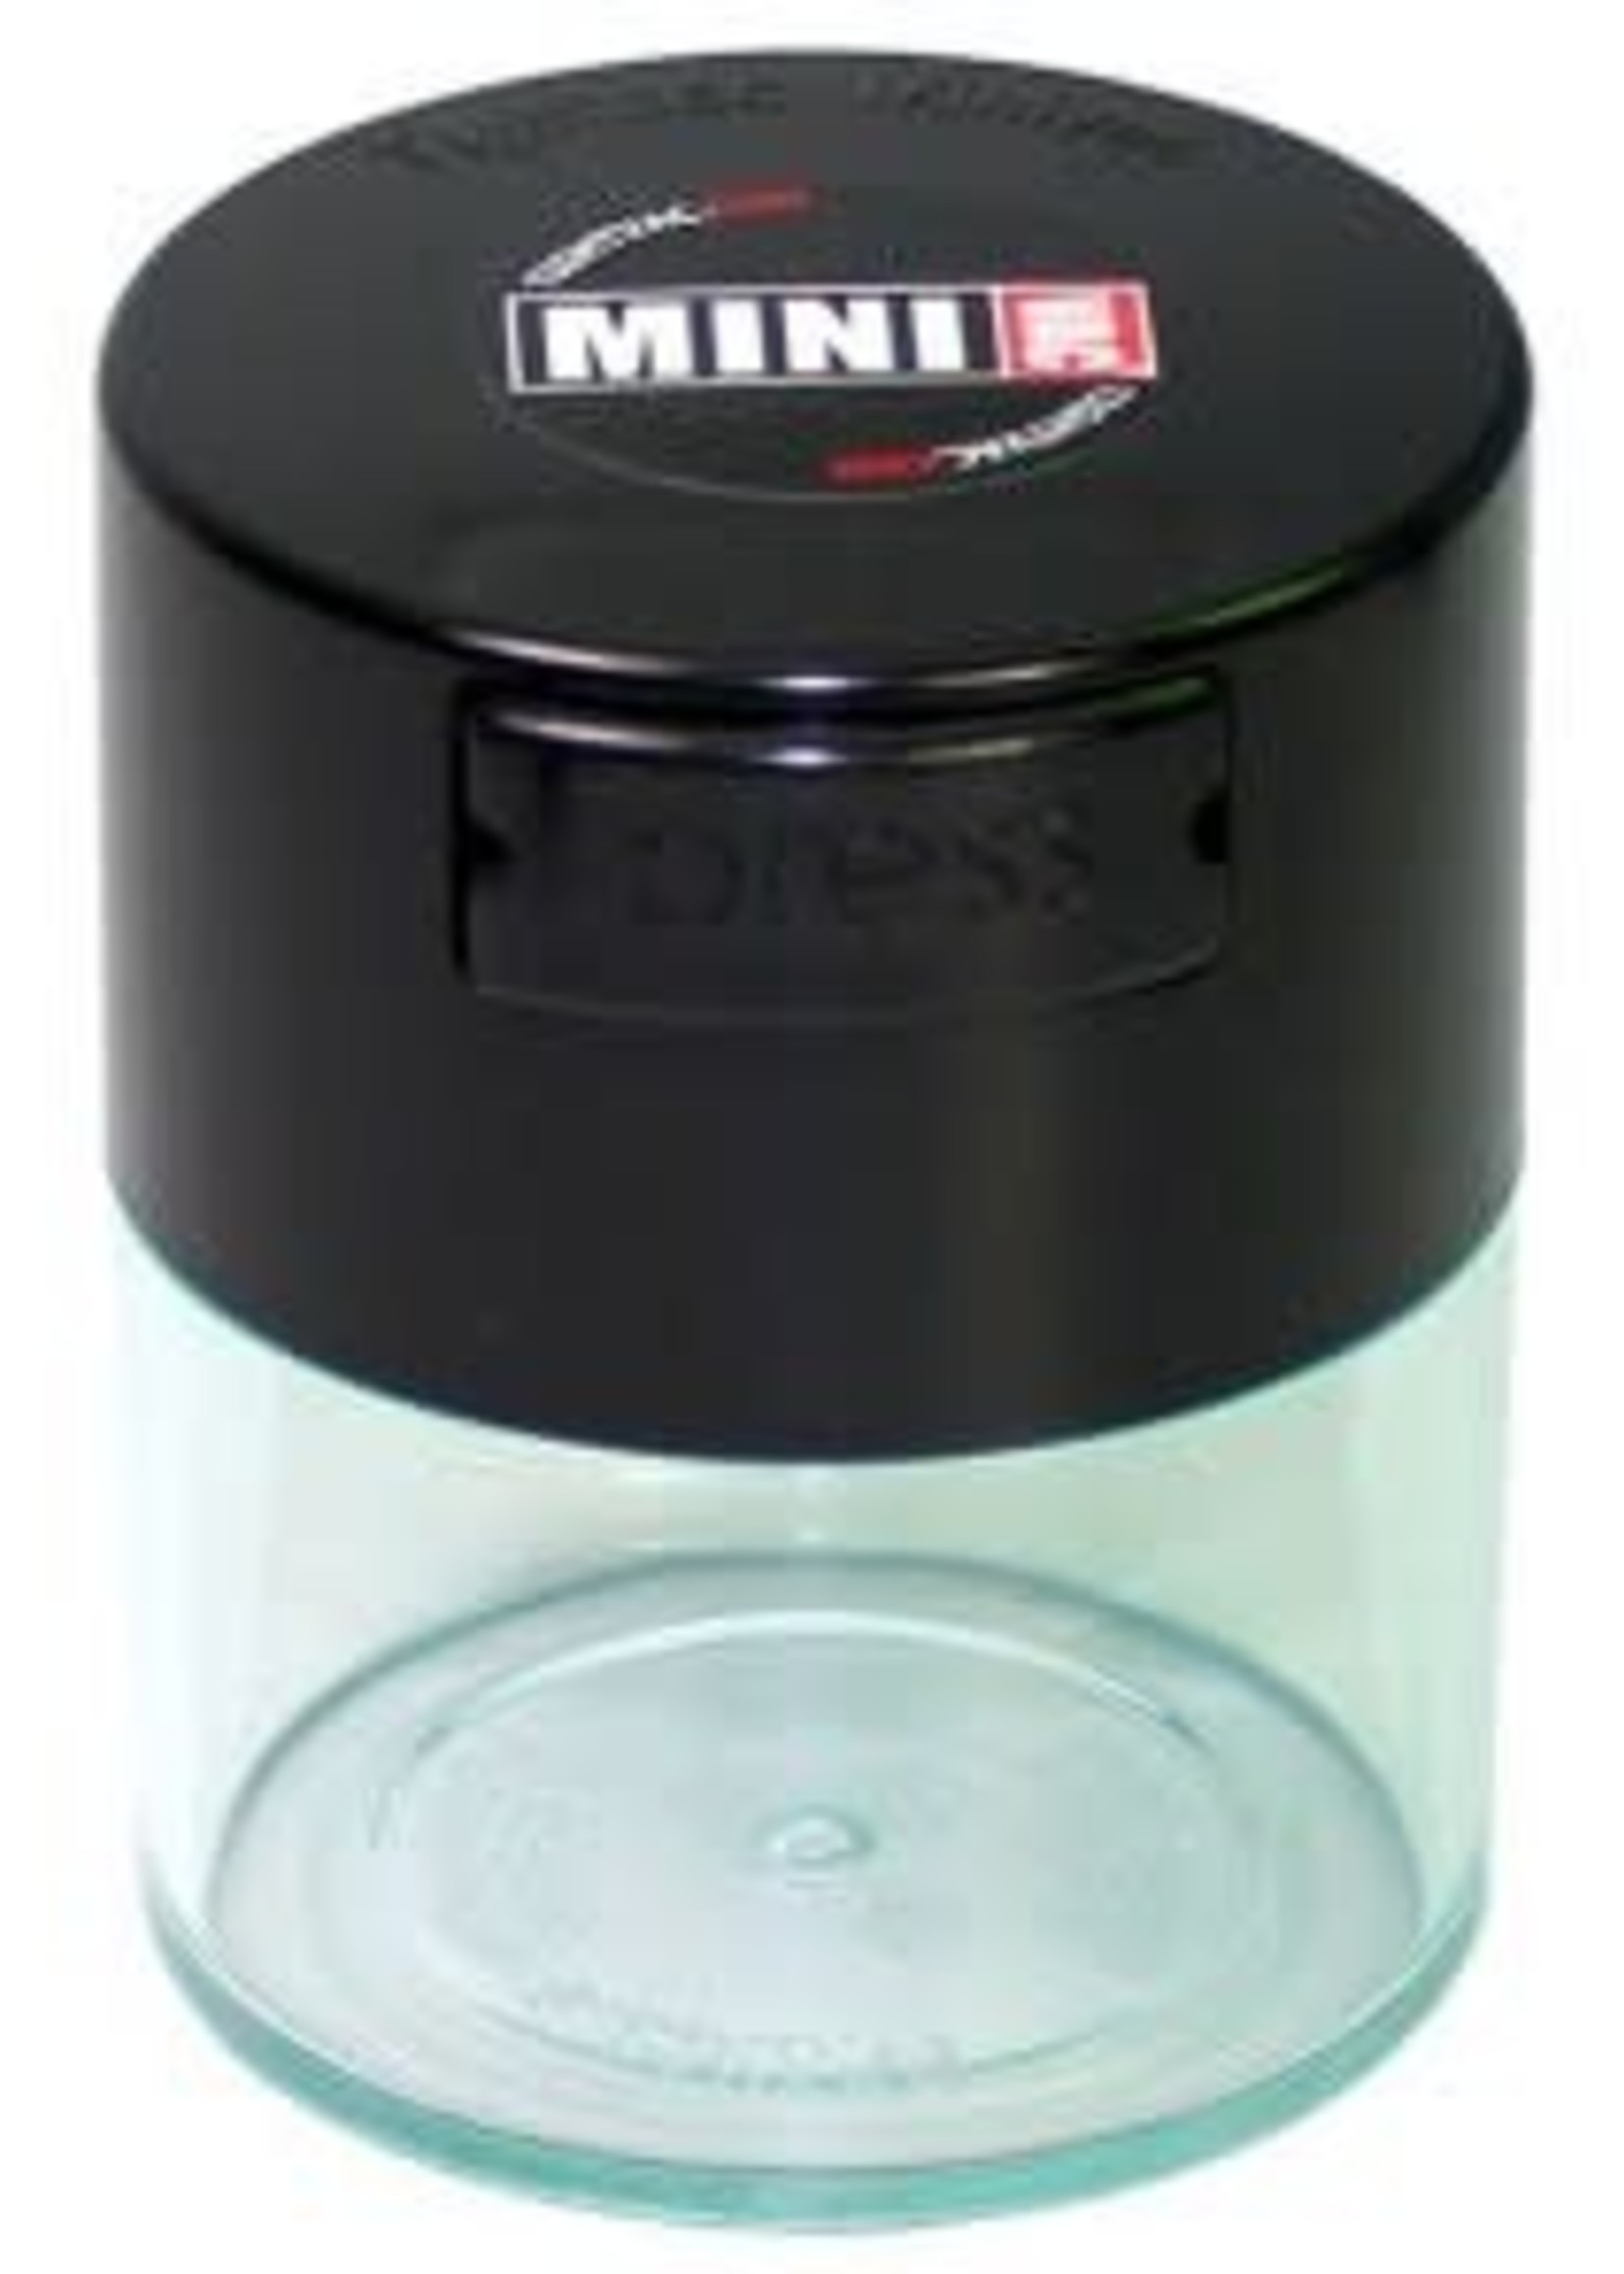 MiniVac 0.12 liter  Black Cap/Clear Body